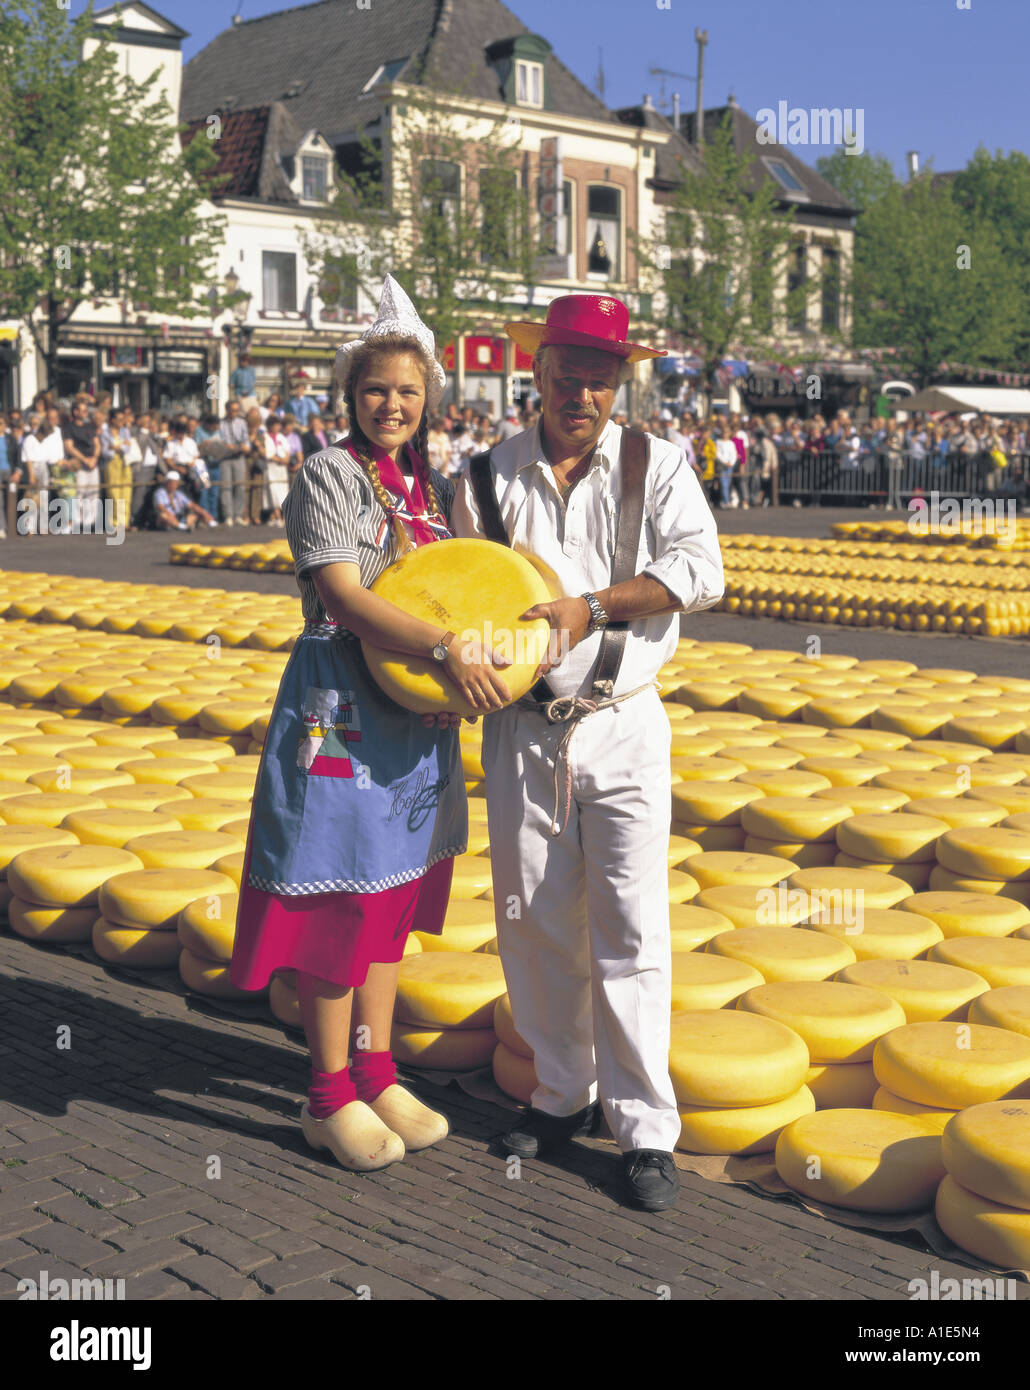 Niederländische Mann und Frau in traditioneller Kleidung in Alkmaar Käsemarkt, Holland Stockfoto